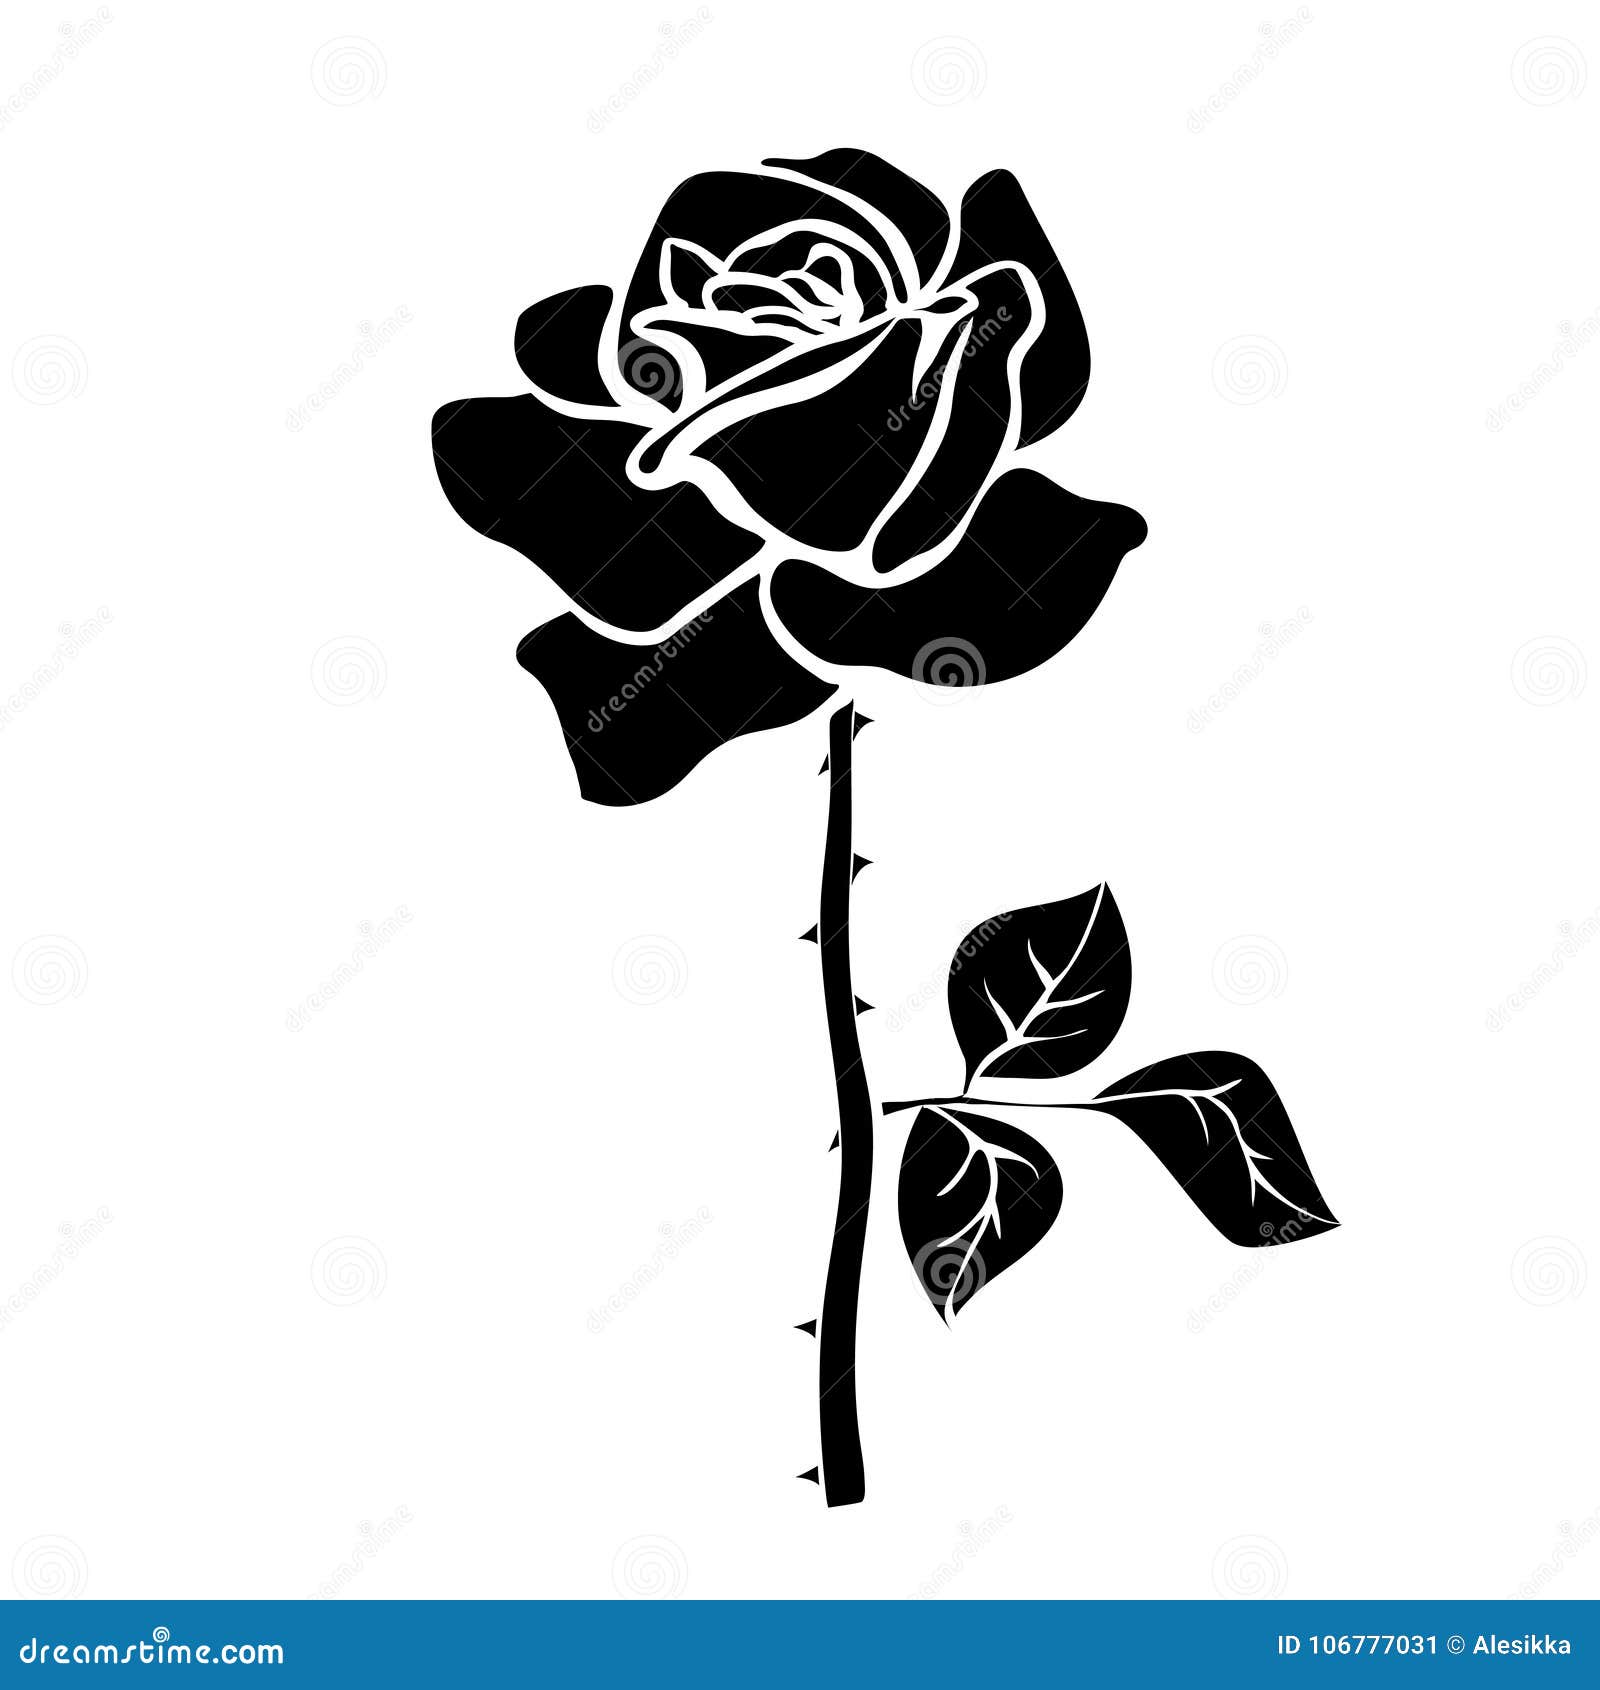 Silhouette of rose stock illustration. Illustration of ornate - 106777031